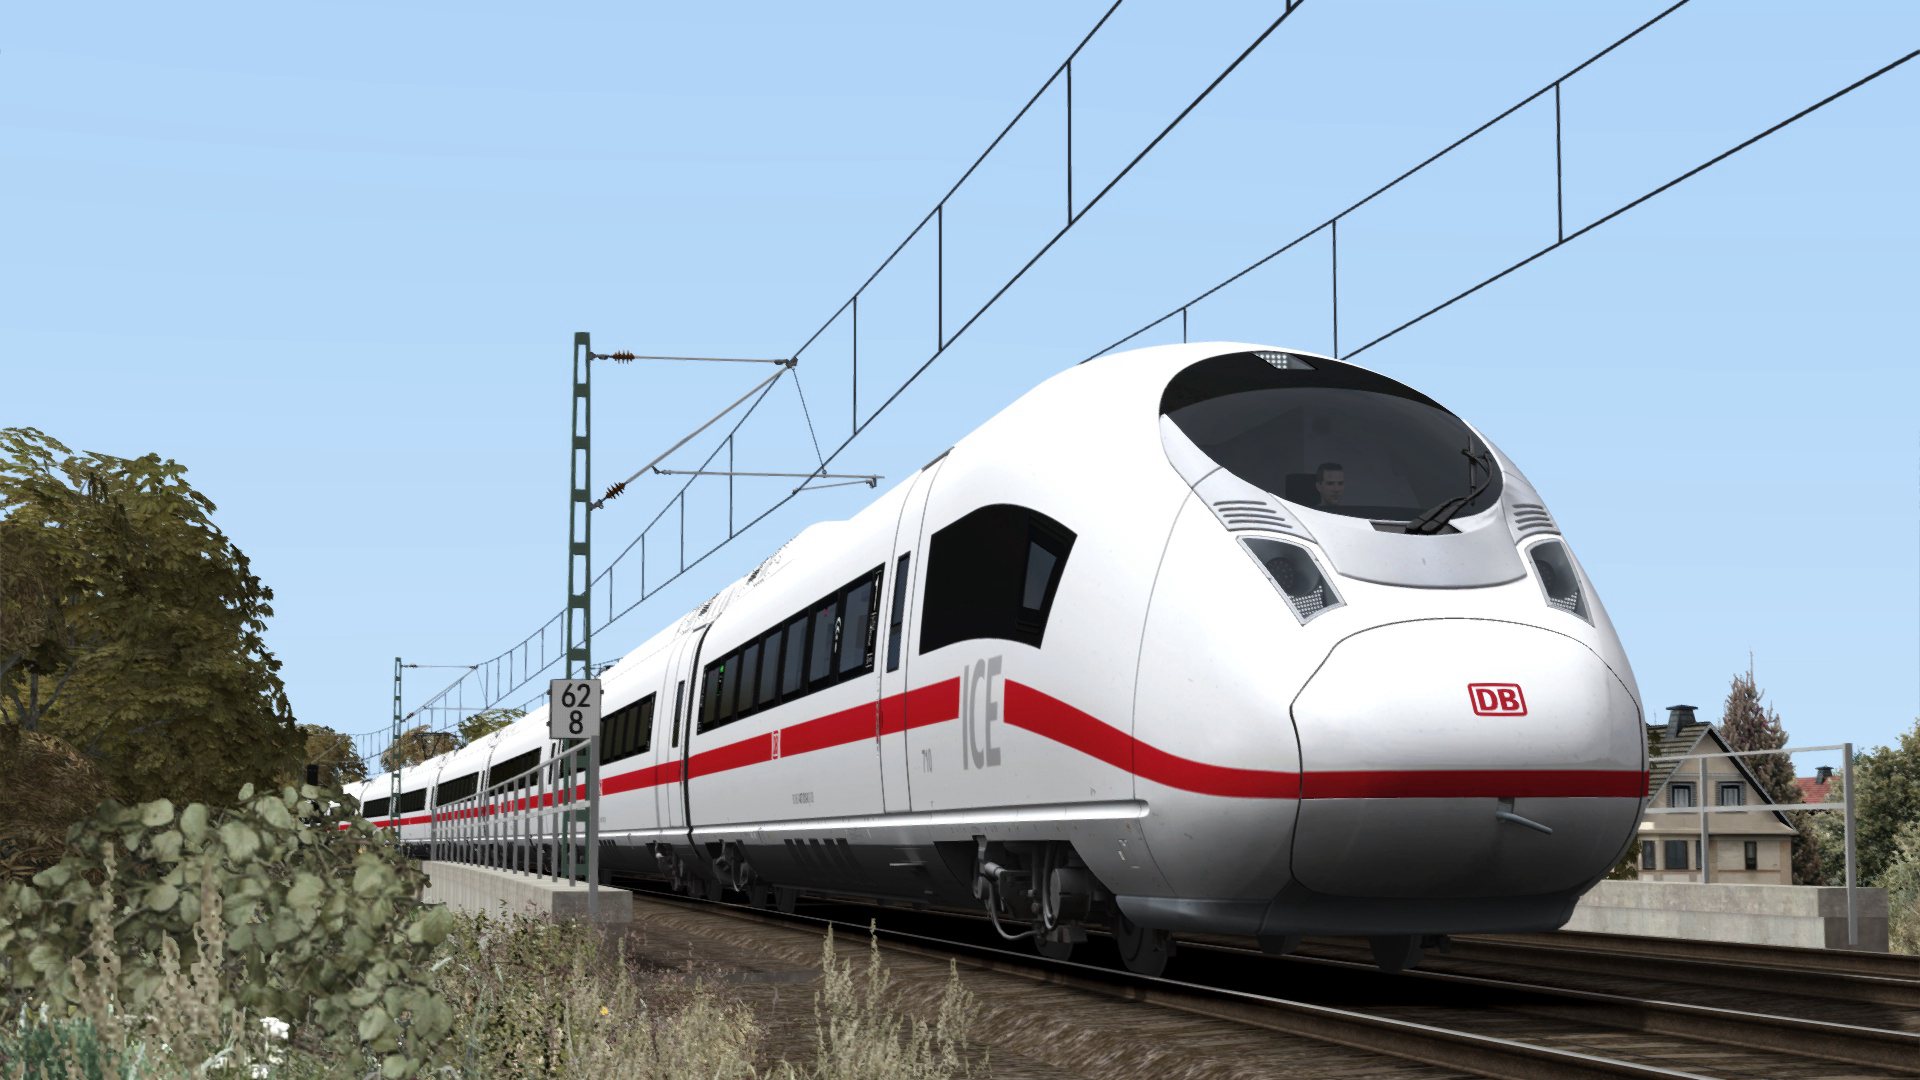 Train Simulator - DB BR 407 ‘New ICE 3’ EMU Add-On DLC Steam CD Key 3.82 $